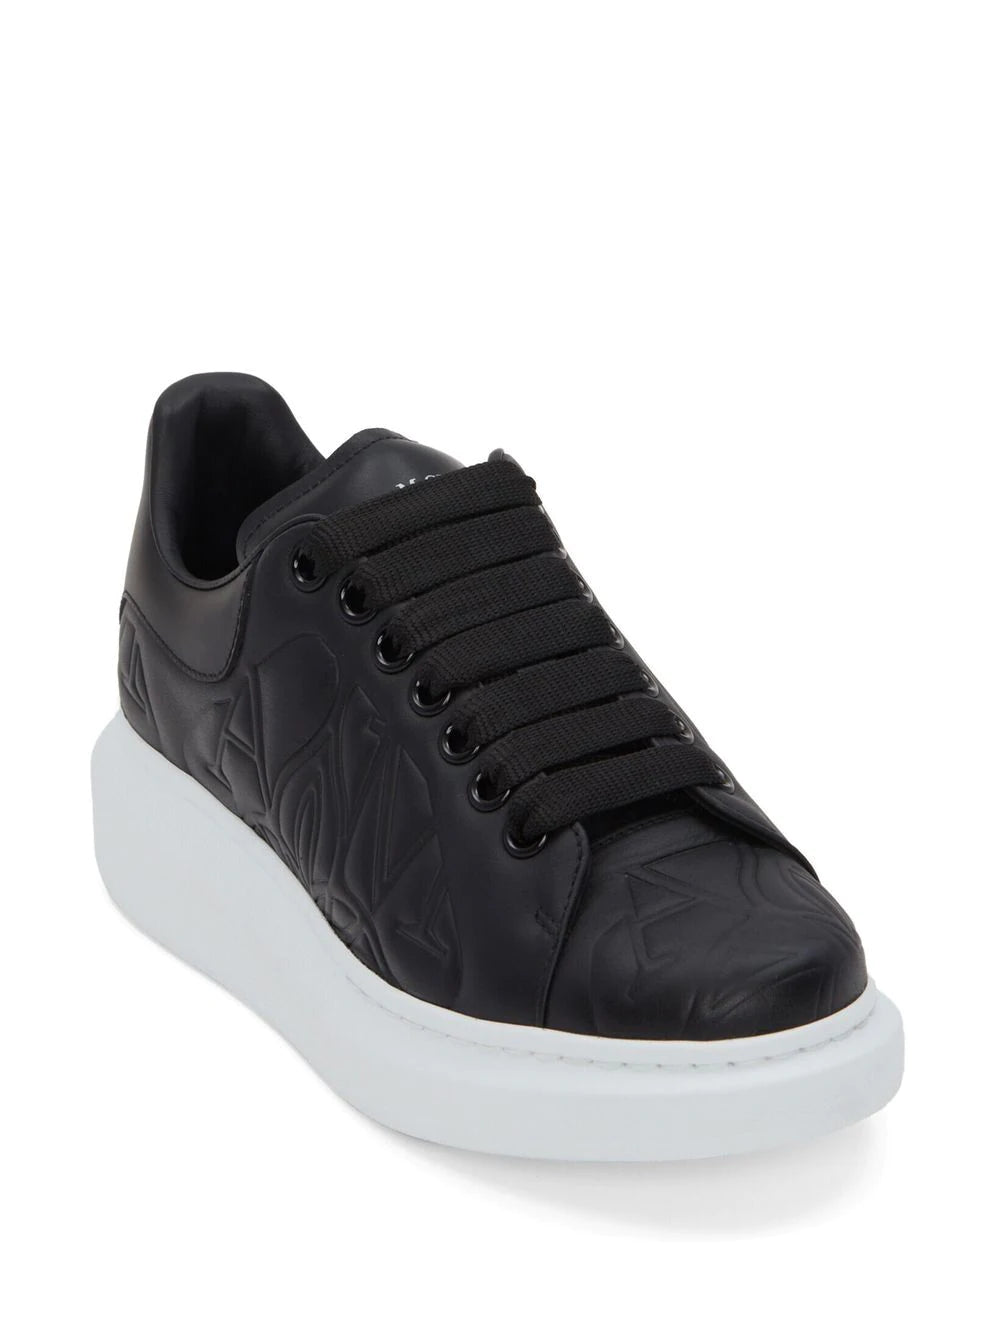 Pasa Pasa Merchants  Dior  Alexander Mcqueen Sneakers sizes 36 37 38  39 40  3500Kes  Facebook